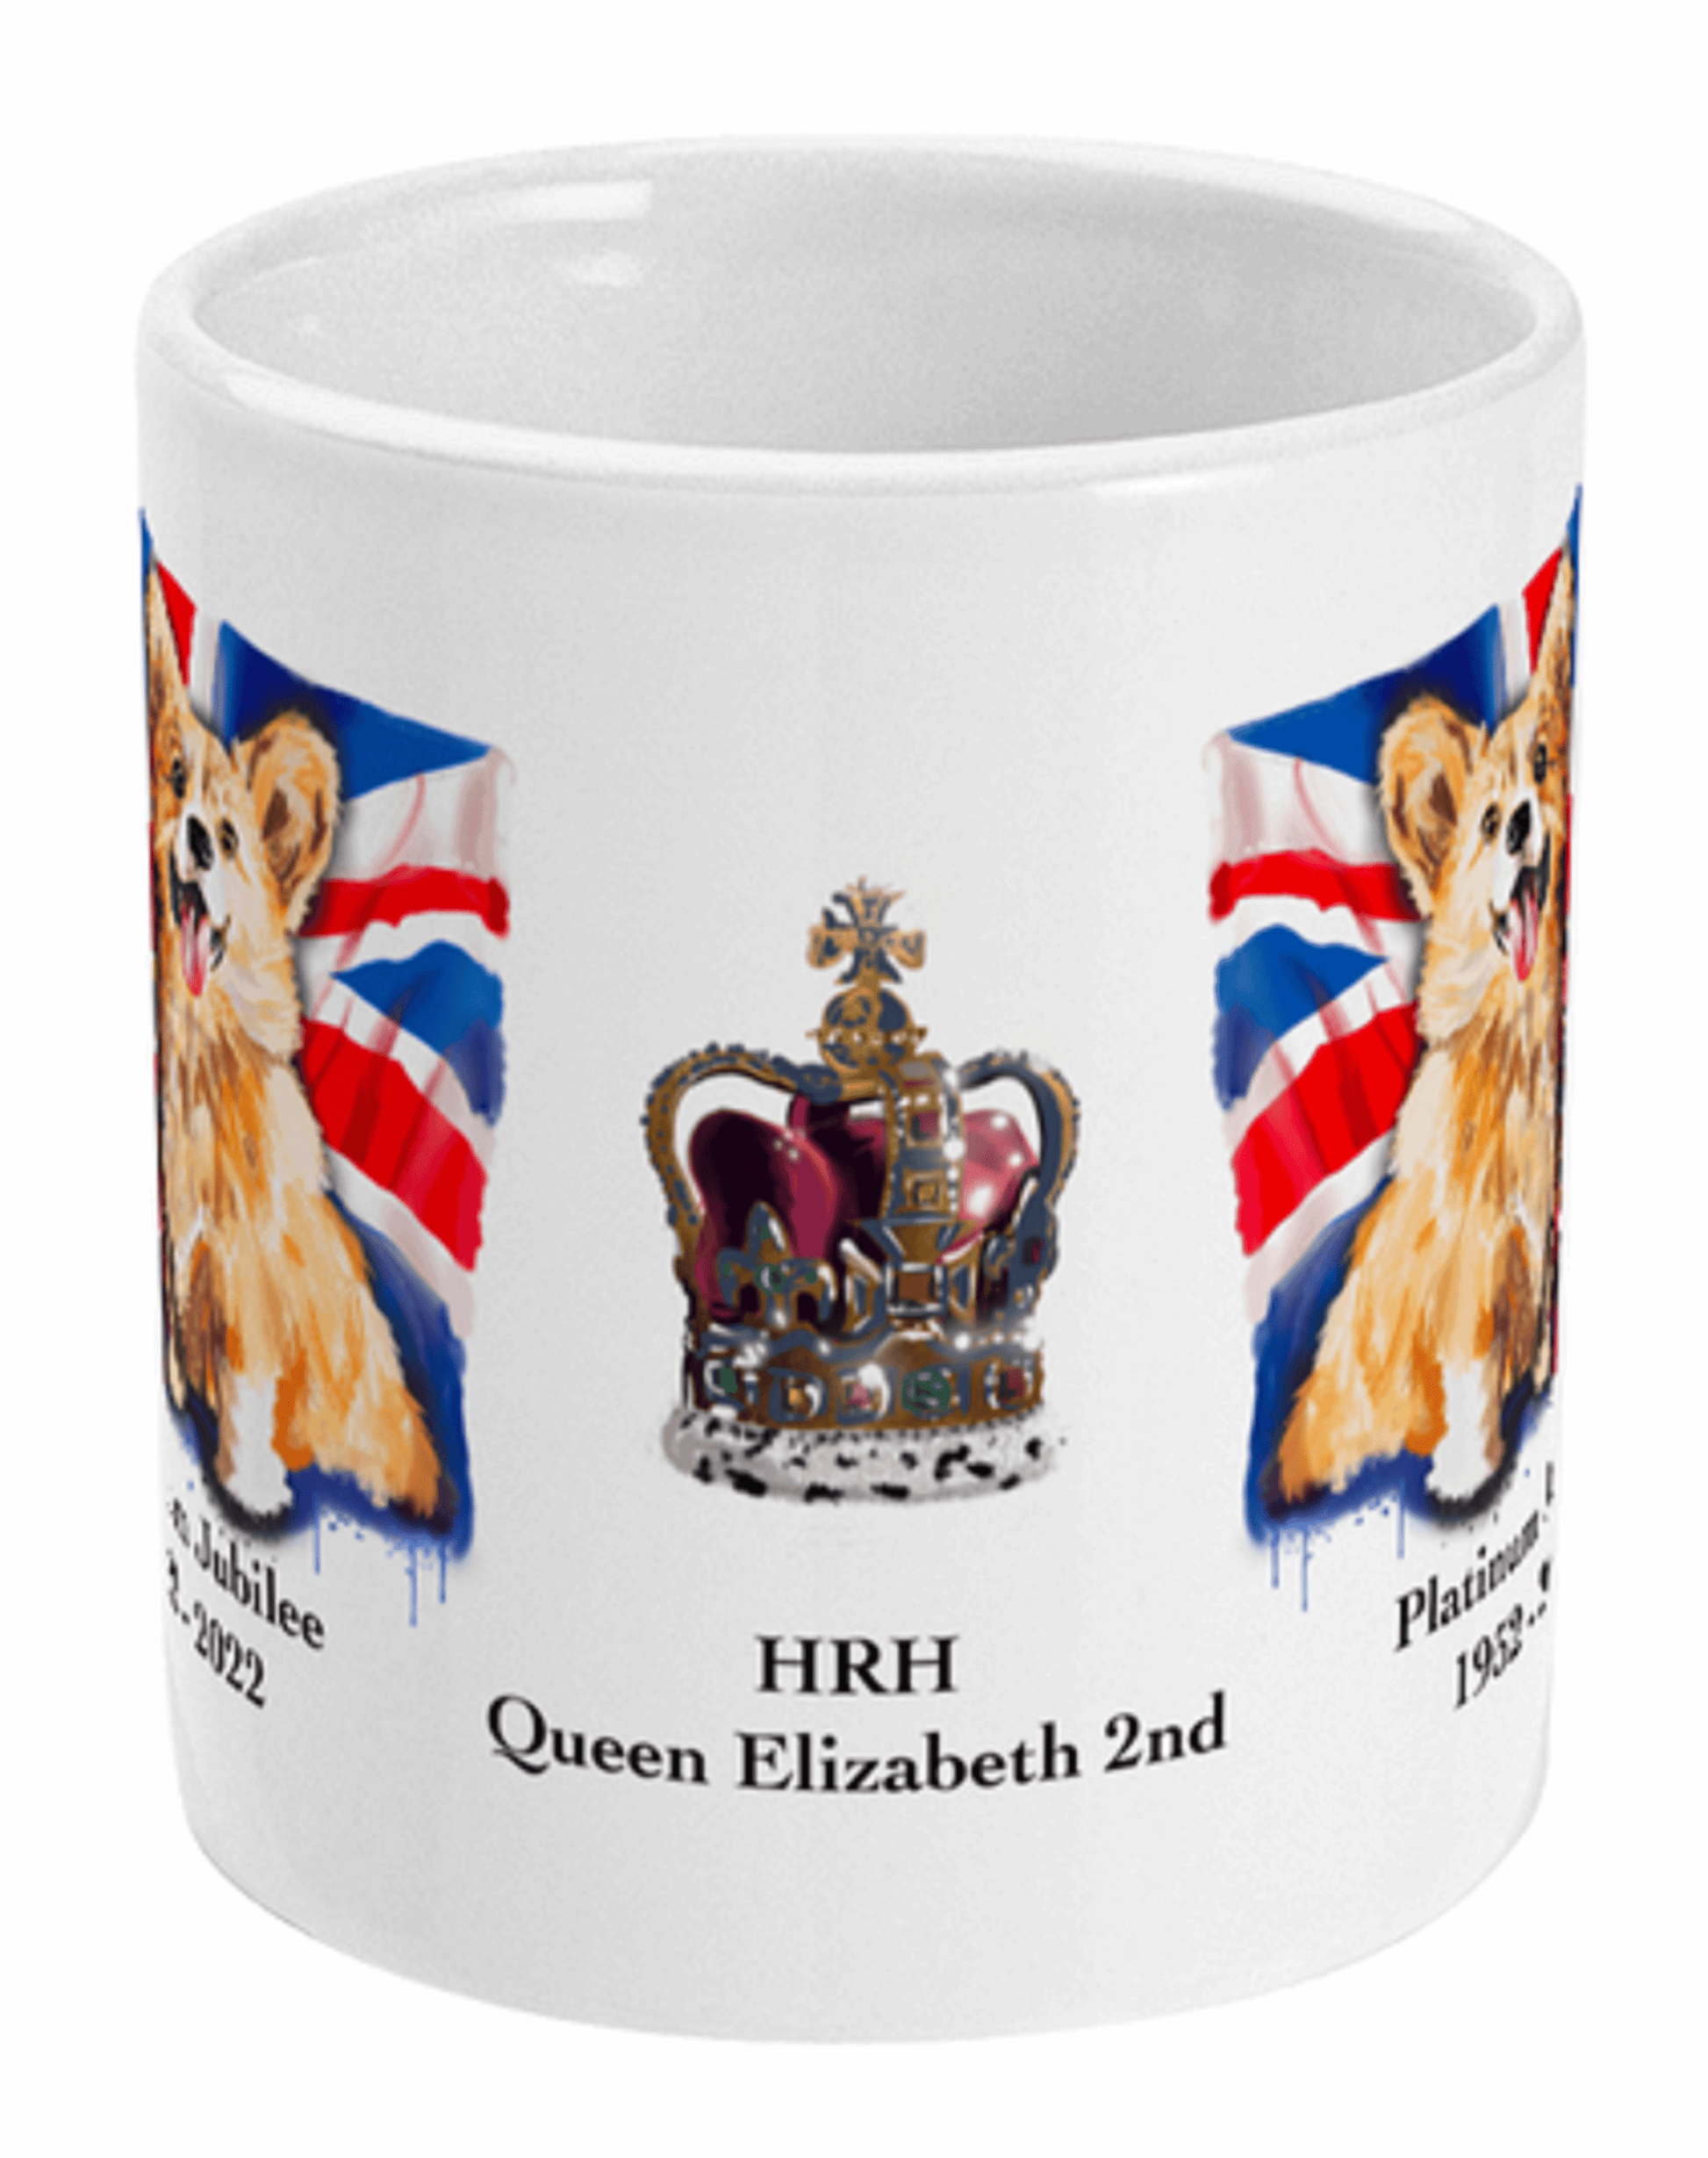  Queen Elizabeth II Platinum Jubilee Mug by Free Spirit Accessories sold by Free Spirit Accessories